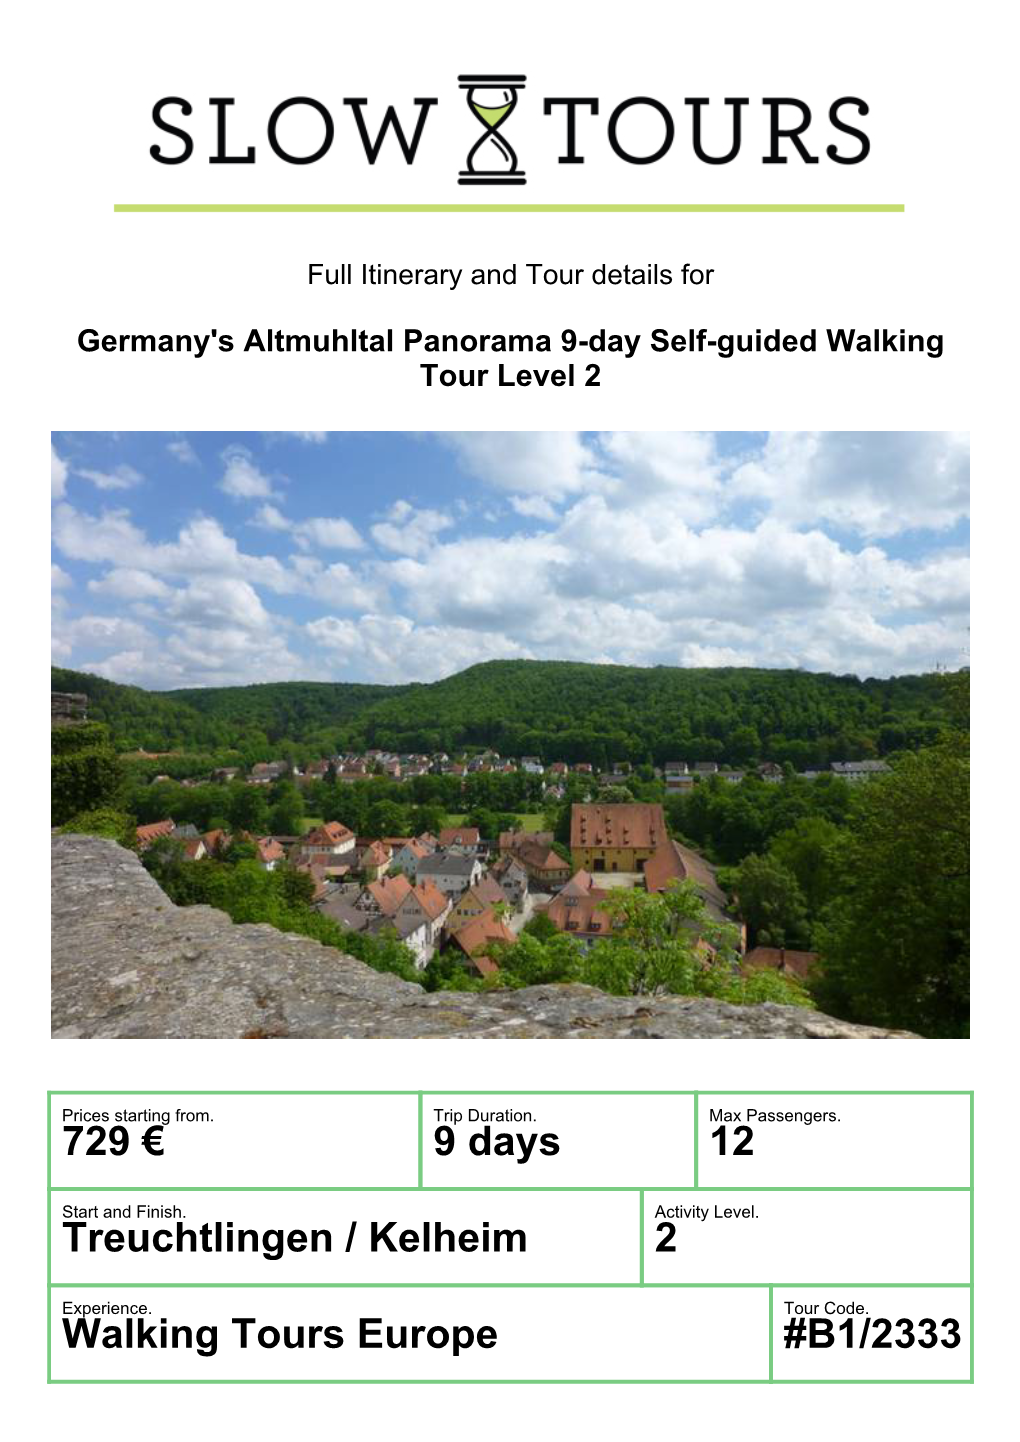 669 € 9 Days 12 Treuchtlingen / Kelheim 2 Walking Tours Europe